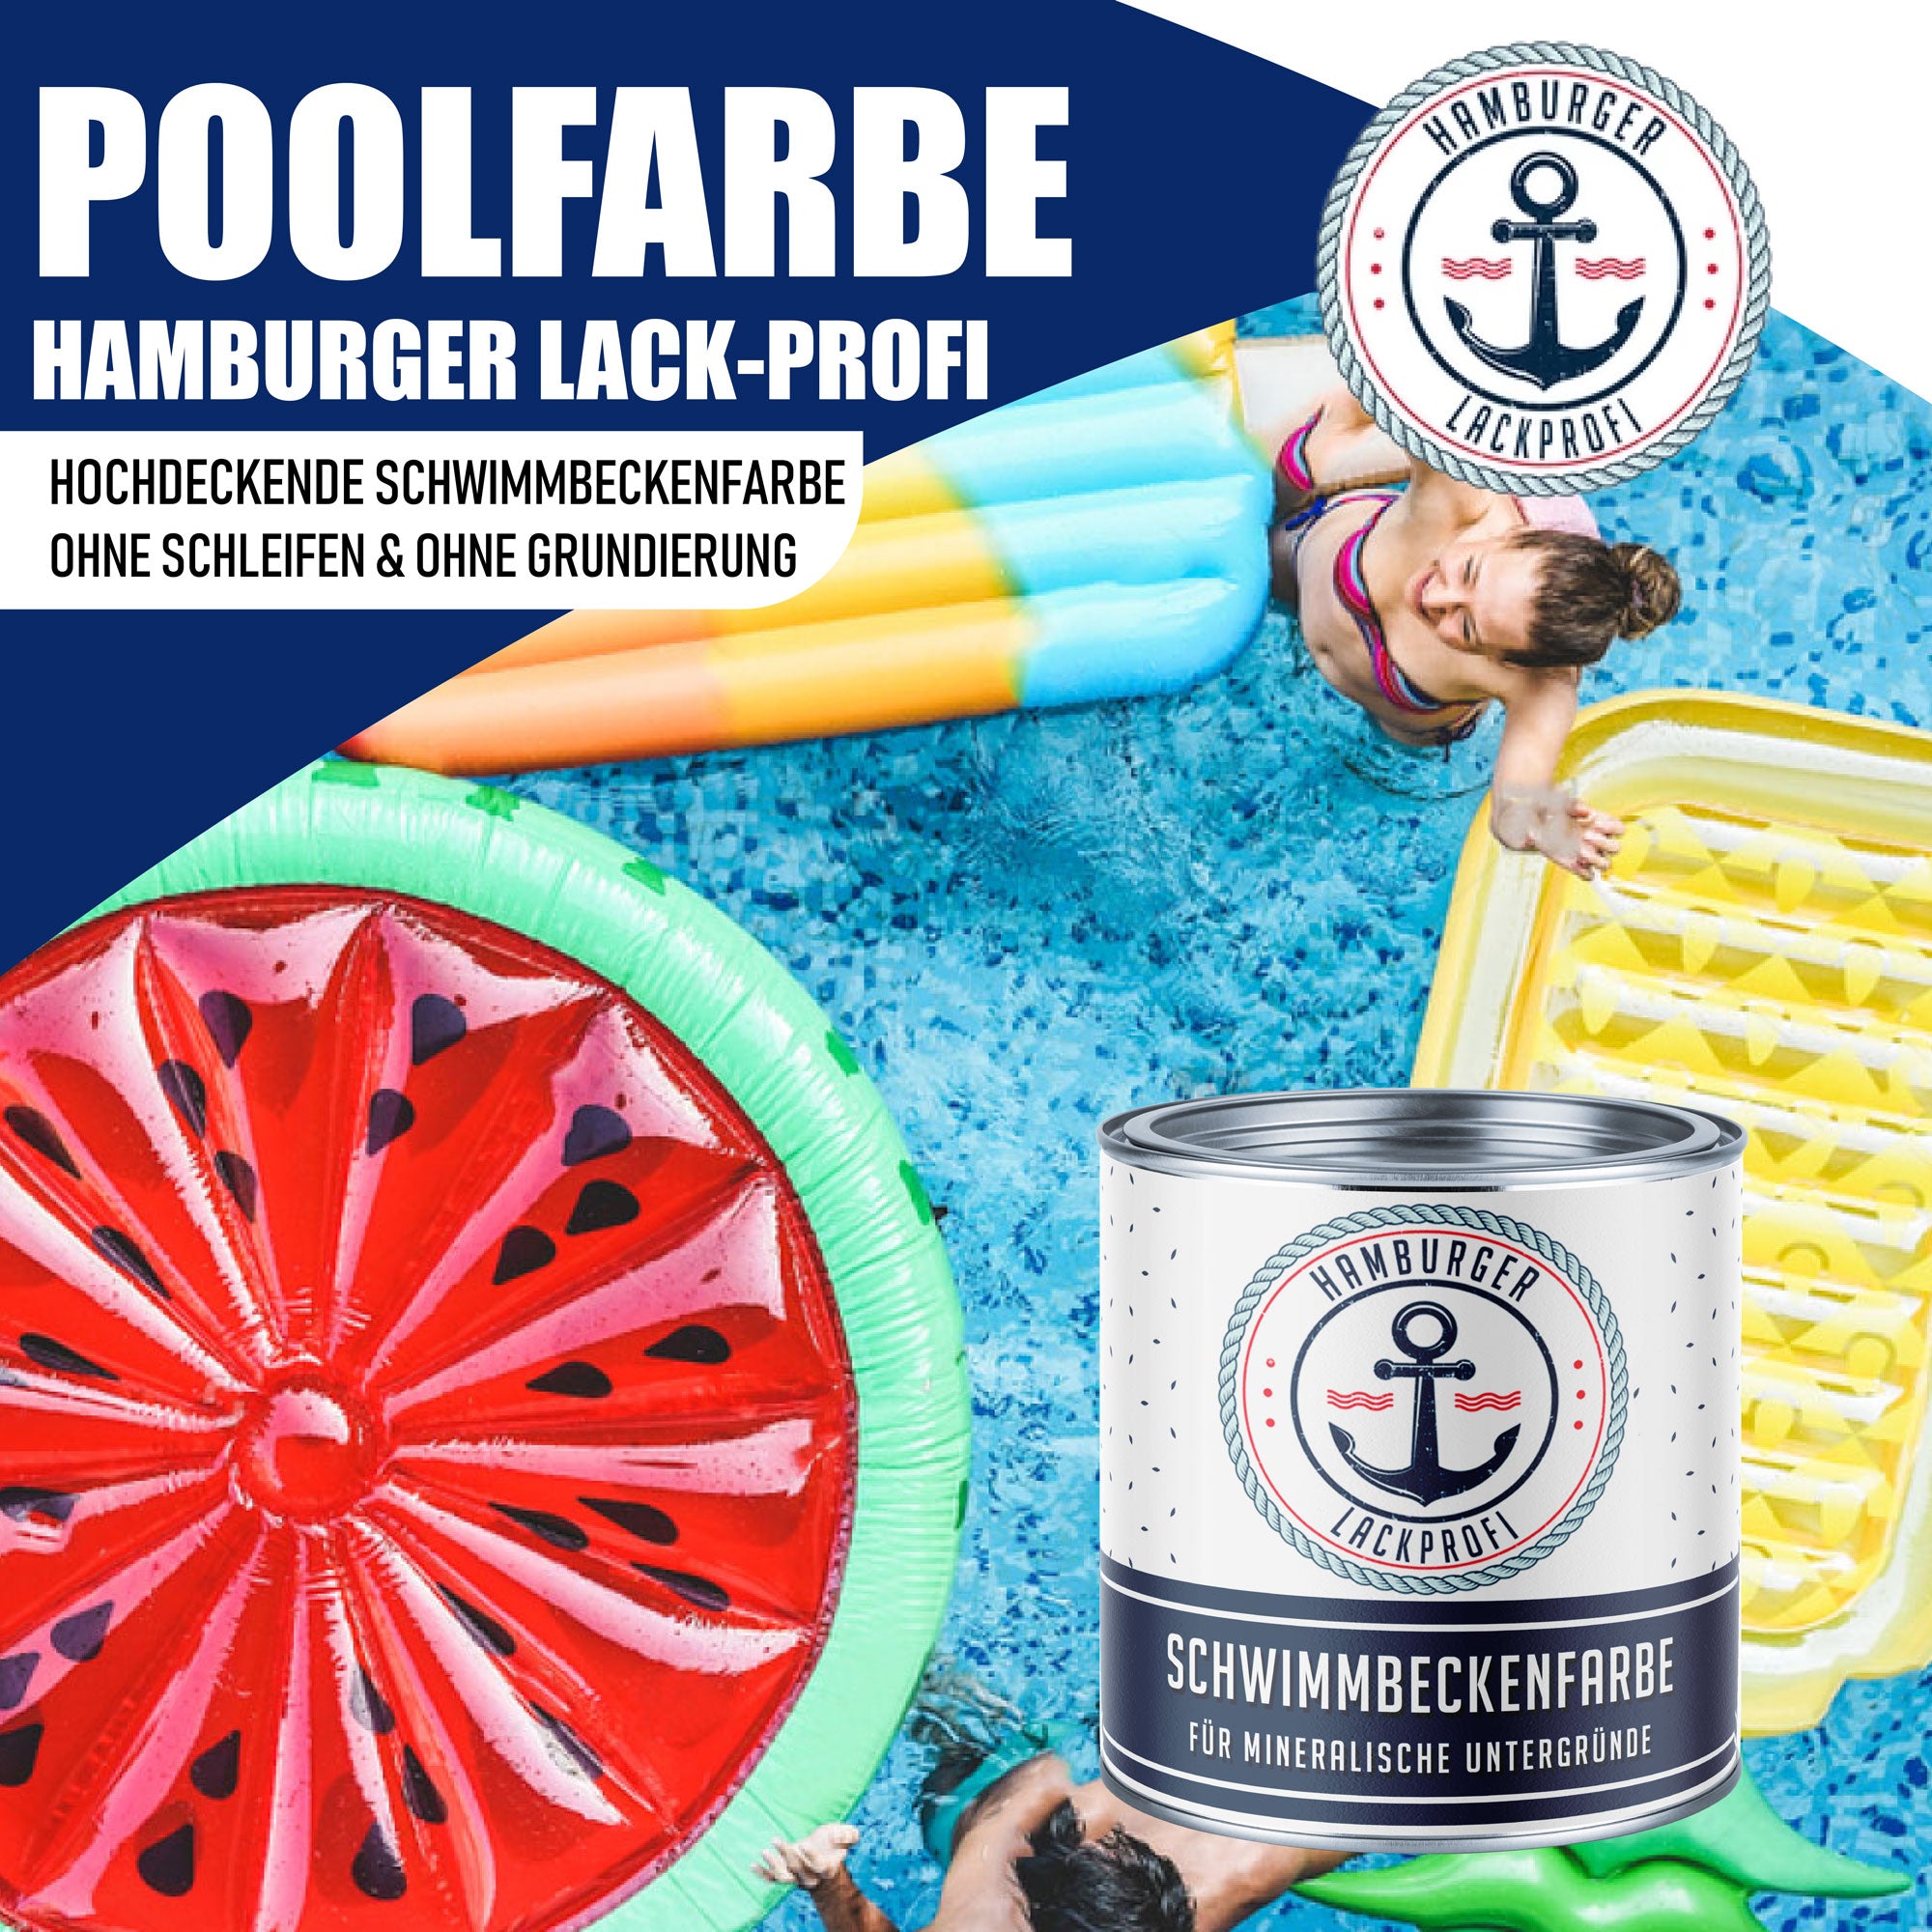 Hamburger Lack-Profi Schwimmbeckenfarbe Minzgrün RAL 6029 - hochdeckende Poolfarbe